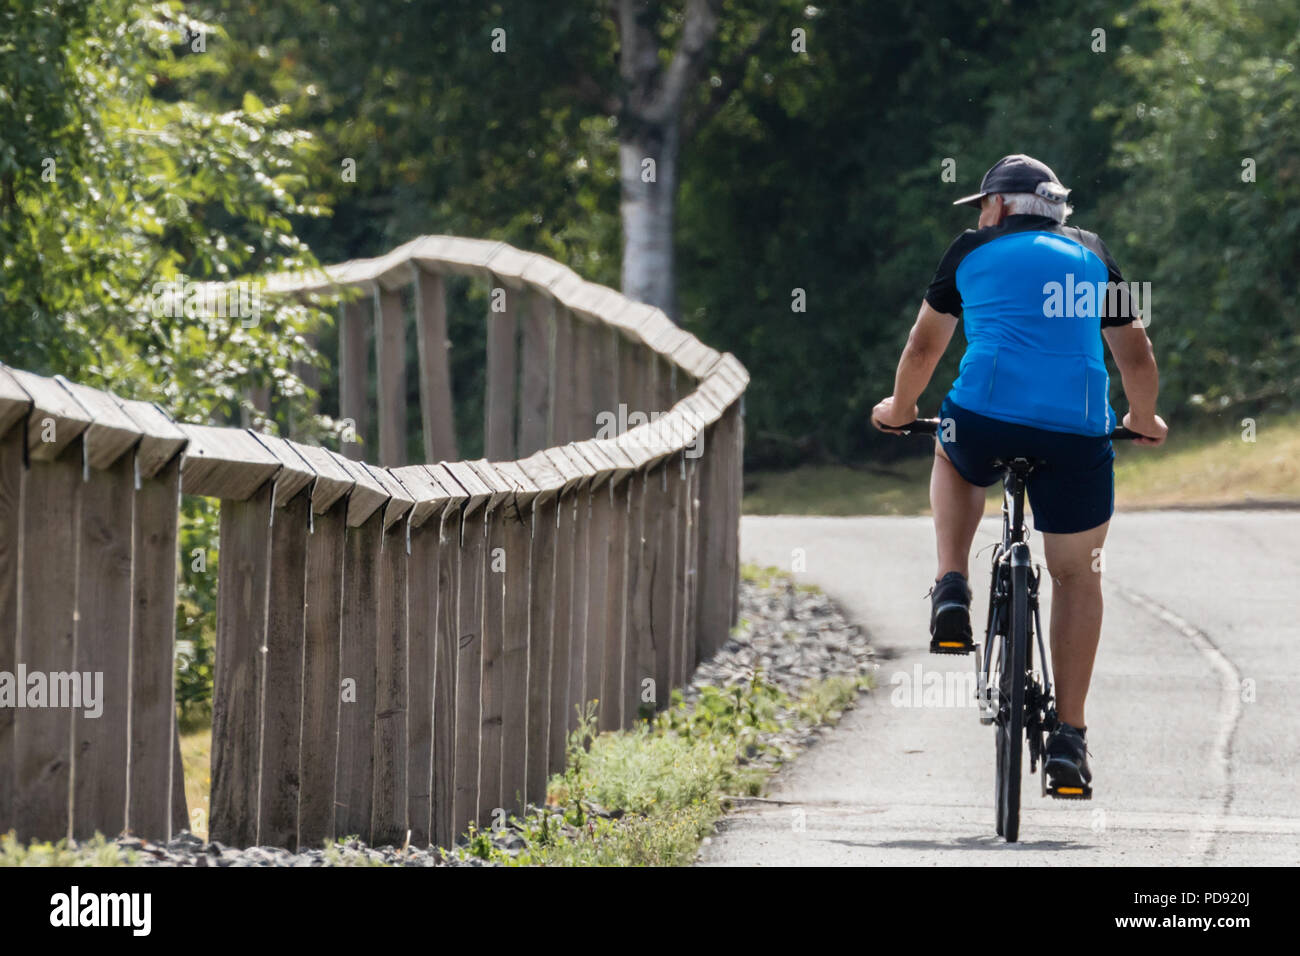 Draycote acqua, 07-09-18. Anziani ciclista indossando un cappello pedali la sua bicicletta su una strada a fianco di una recinzione che le curve a sinistra e al di fuori della vista. Foto Stock